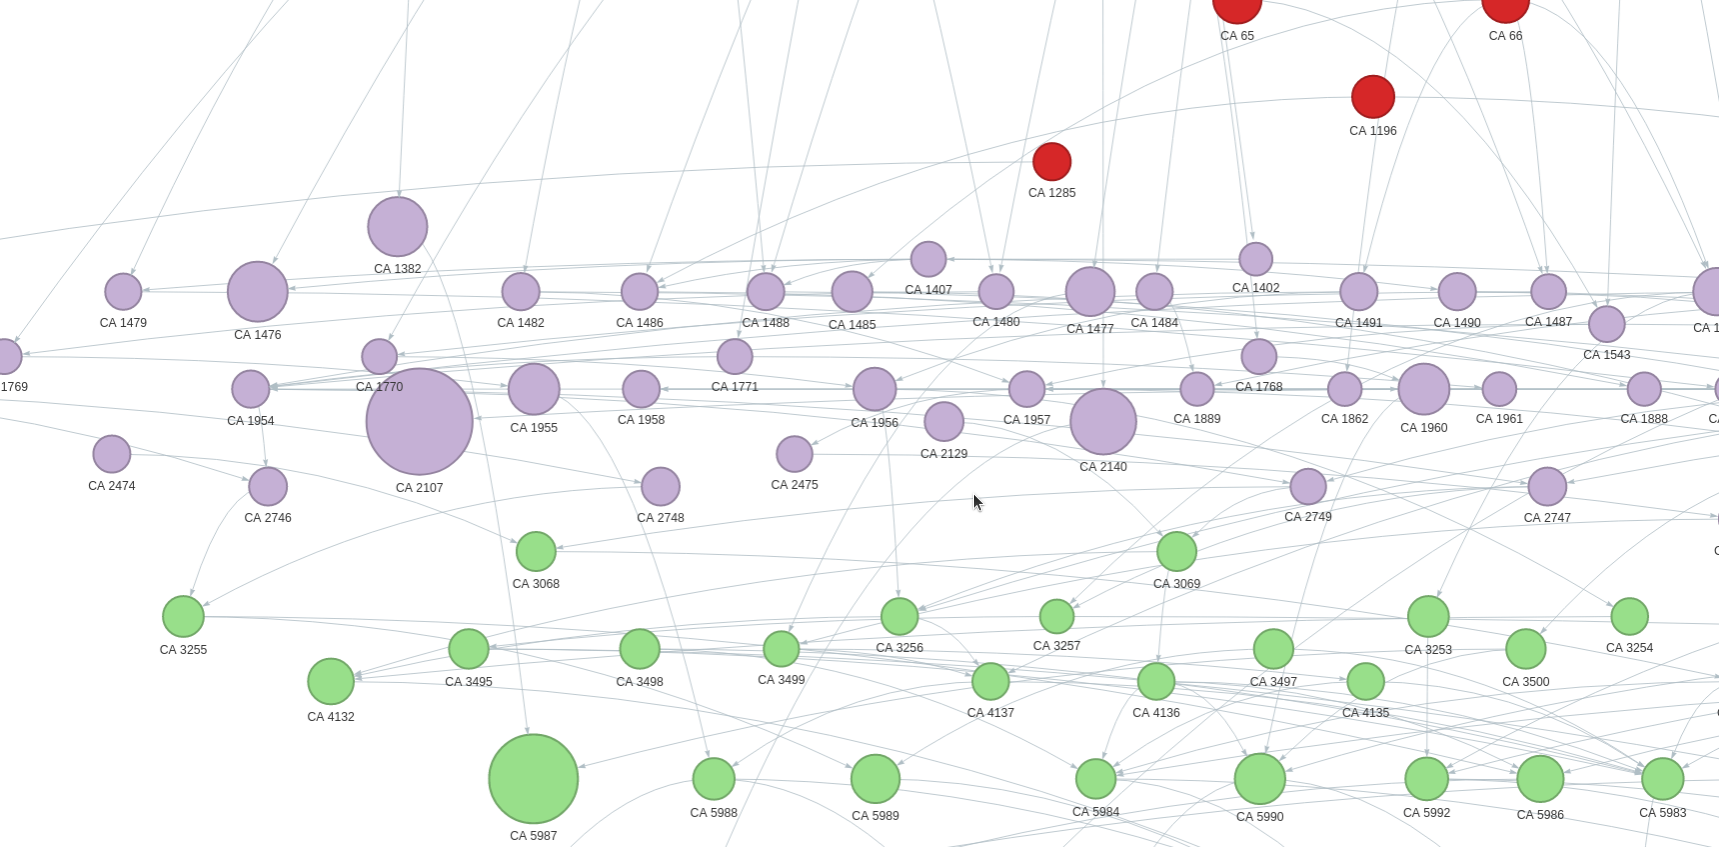 Screenshot of network graph